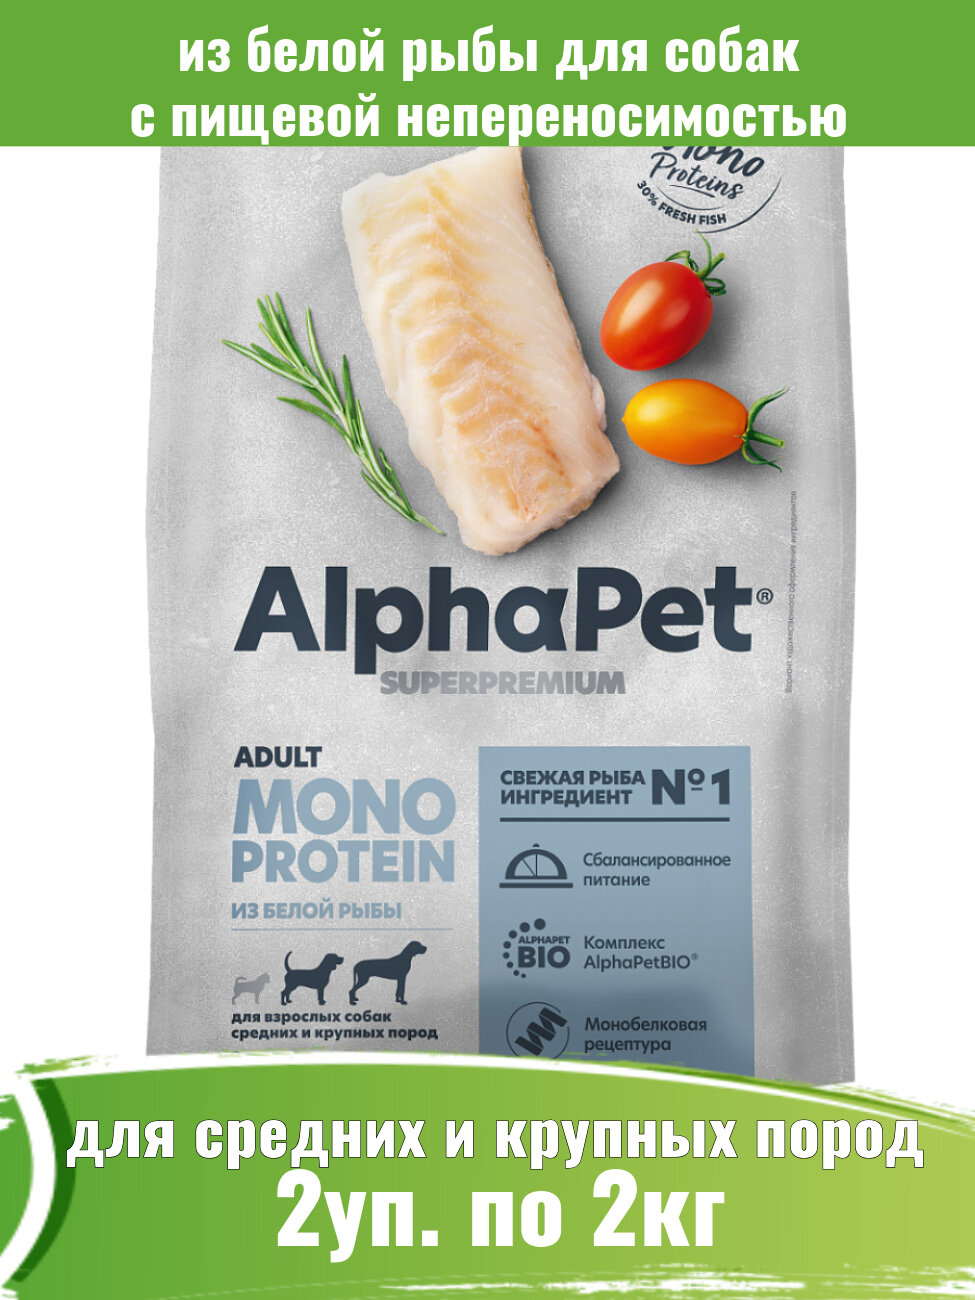 AlphaPet Superpremium Monoprotein 2шт по 2кг корм из белой рыбы для собак средних и крупных пород